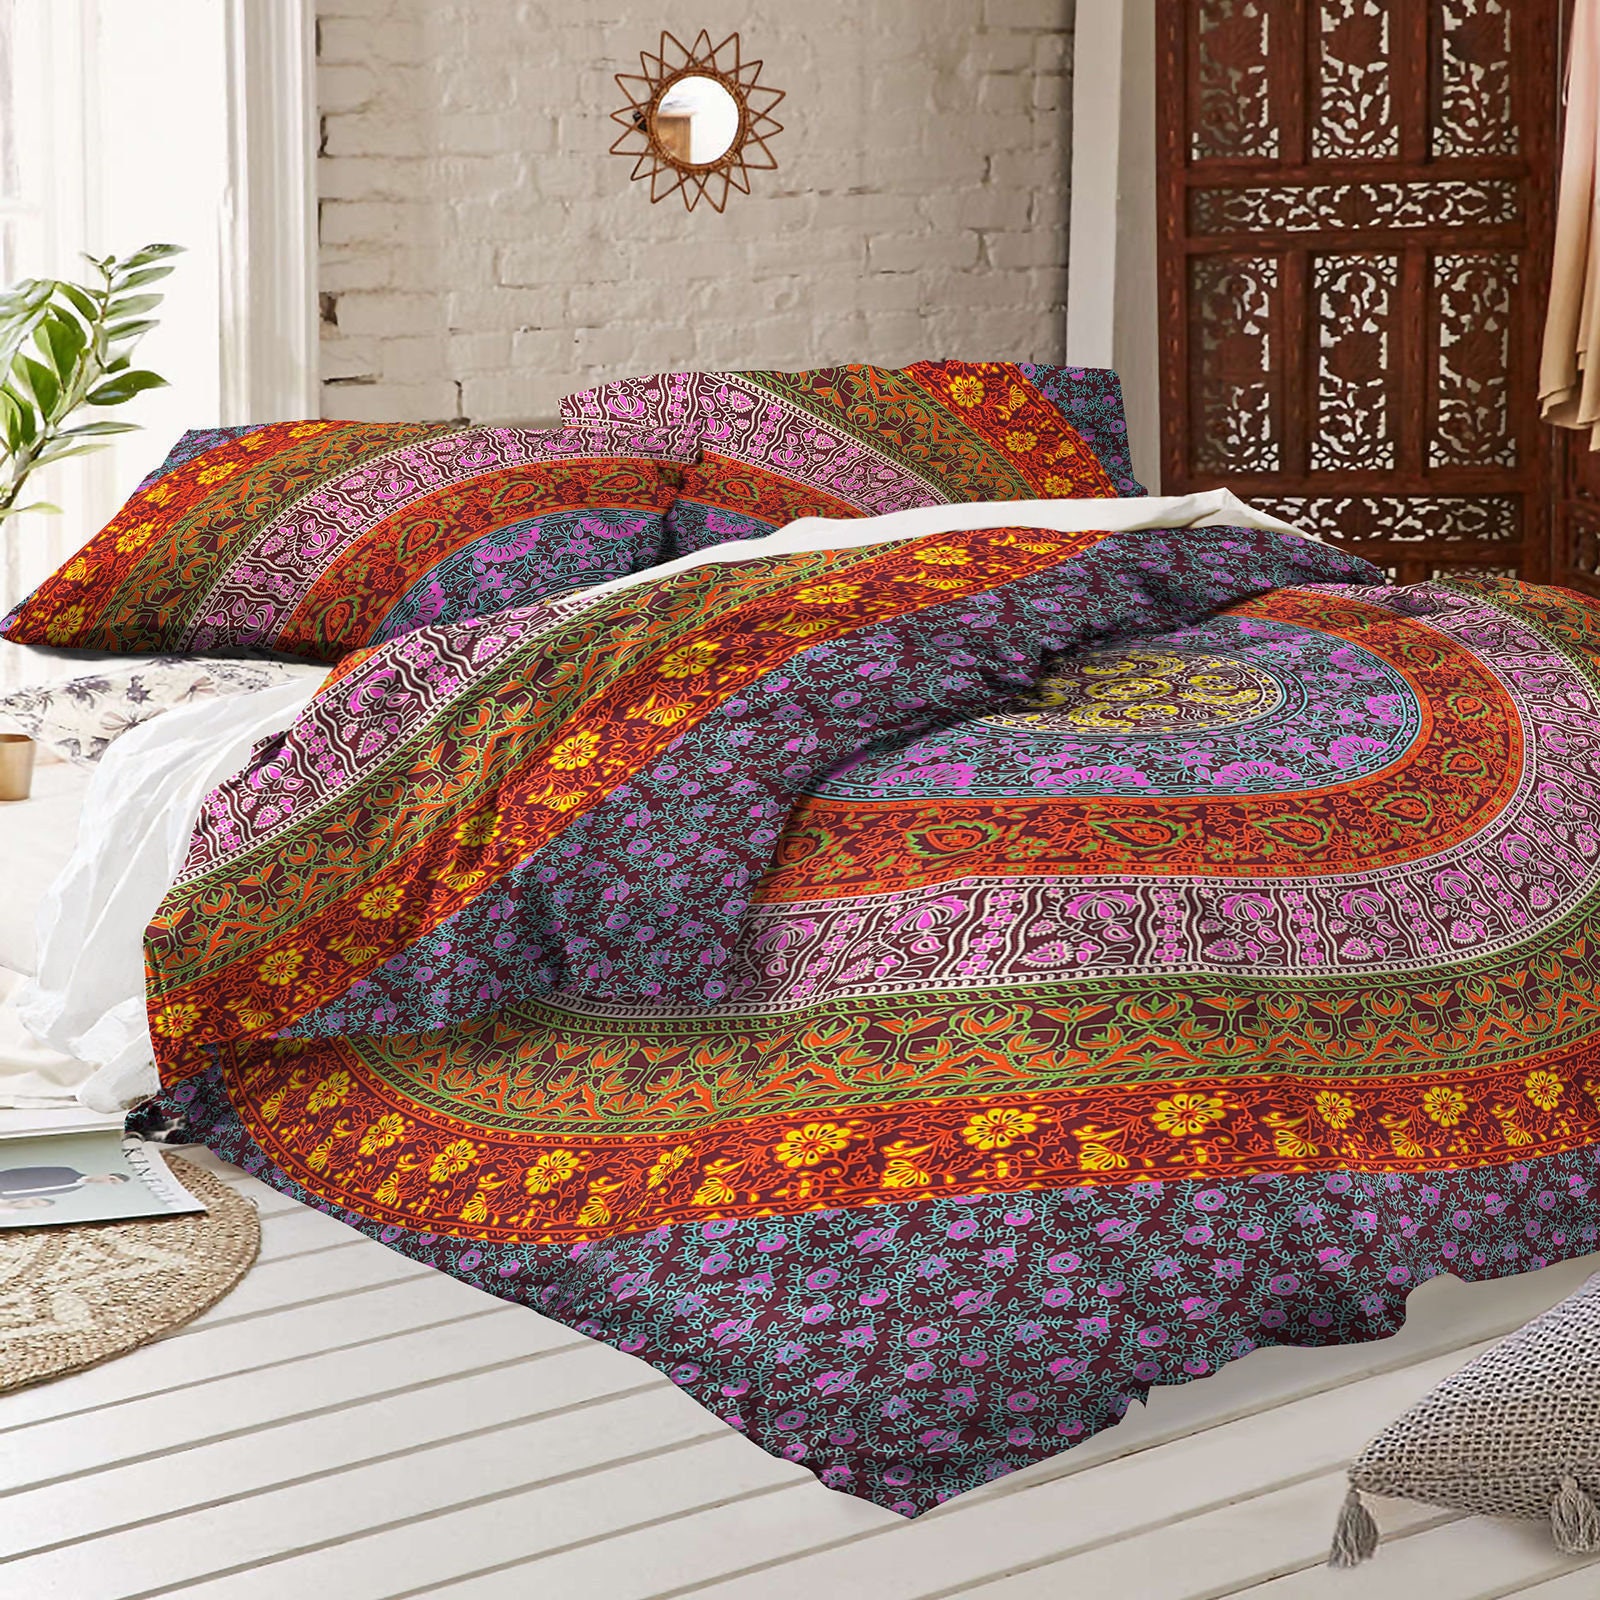 Hippie Duvet Cover Set Bedding Set With Pillow Covers 100% Natural Cotton Duvet Cover Indian Handmade Mandala Blanket Boho Style Duvet Cover